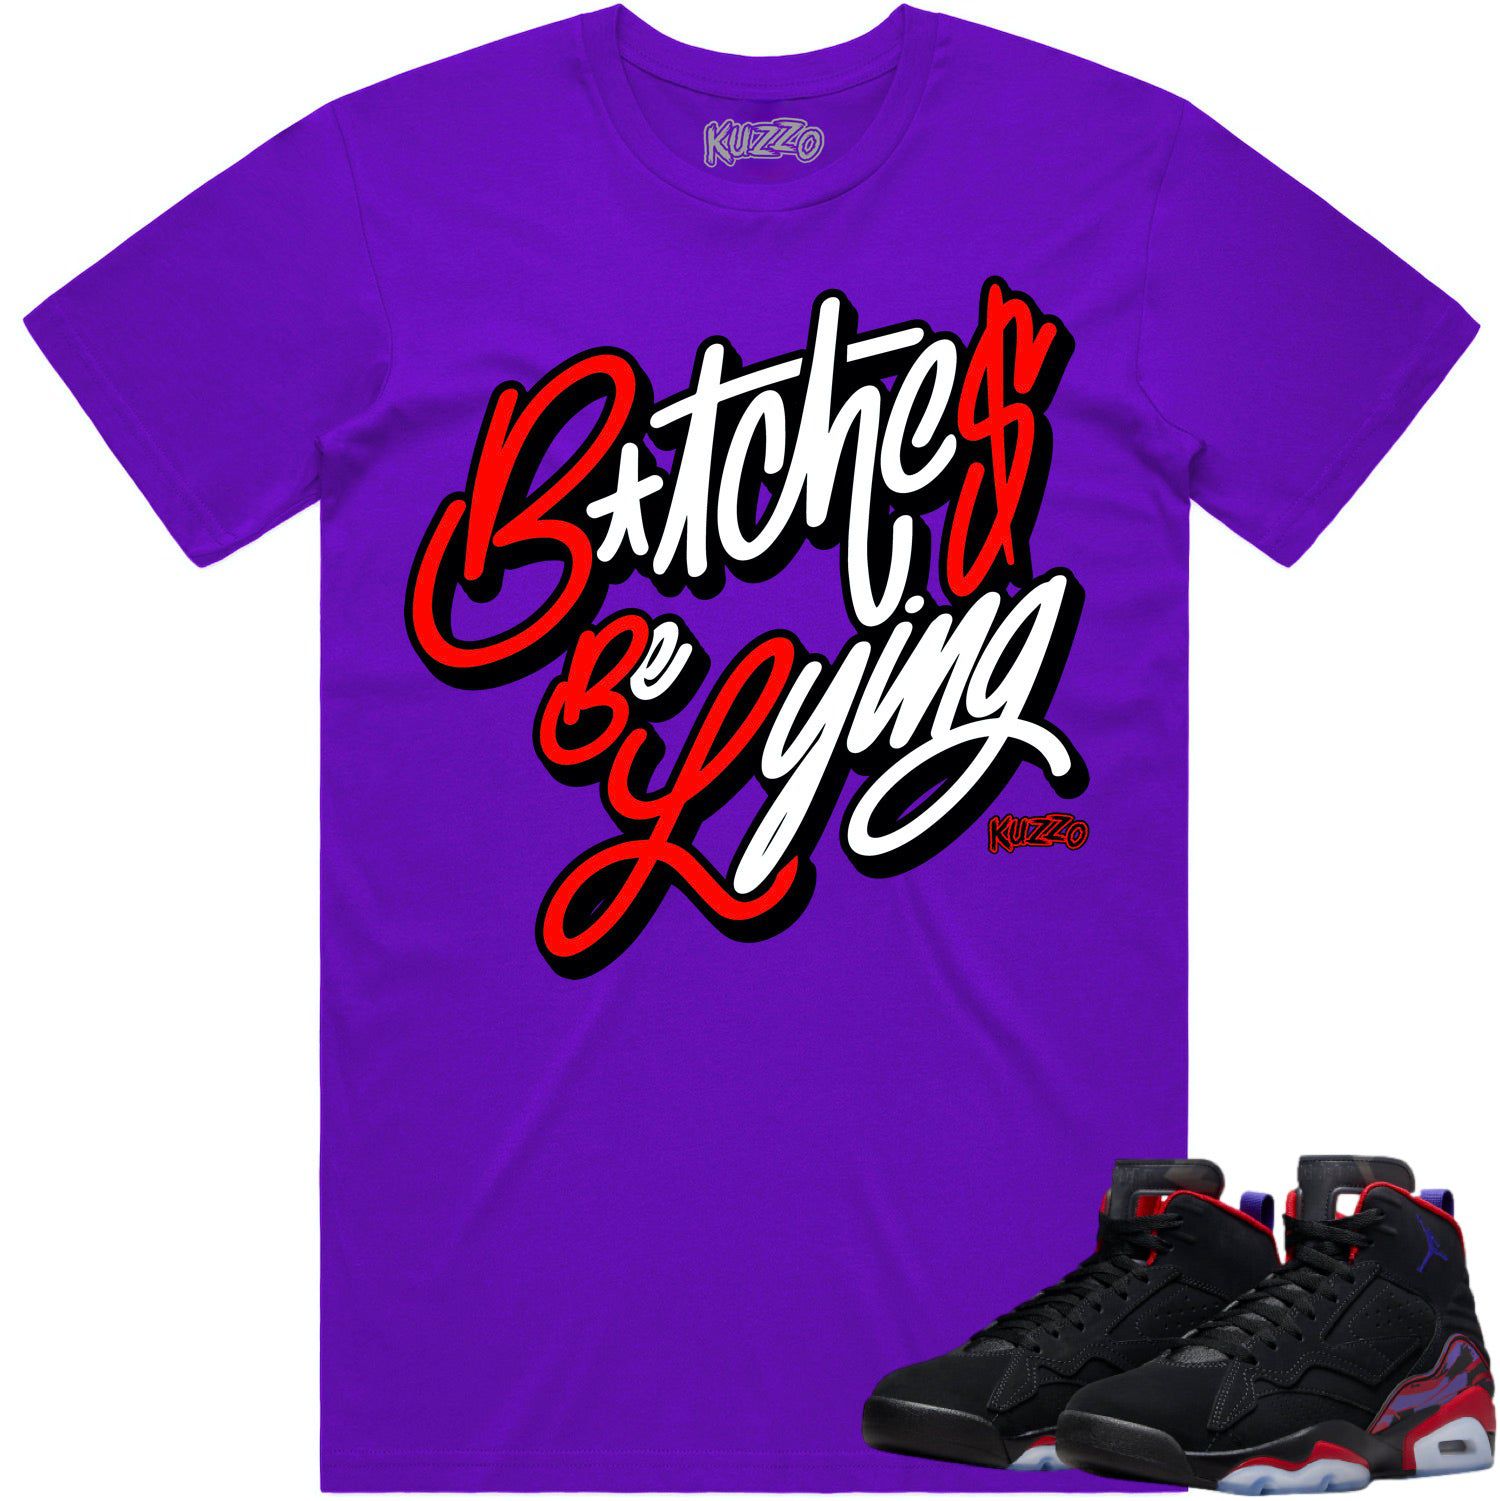 Jordan MVP Raptors Shirt - Sneaker Tees - Red Fly Gangsta